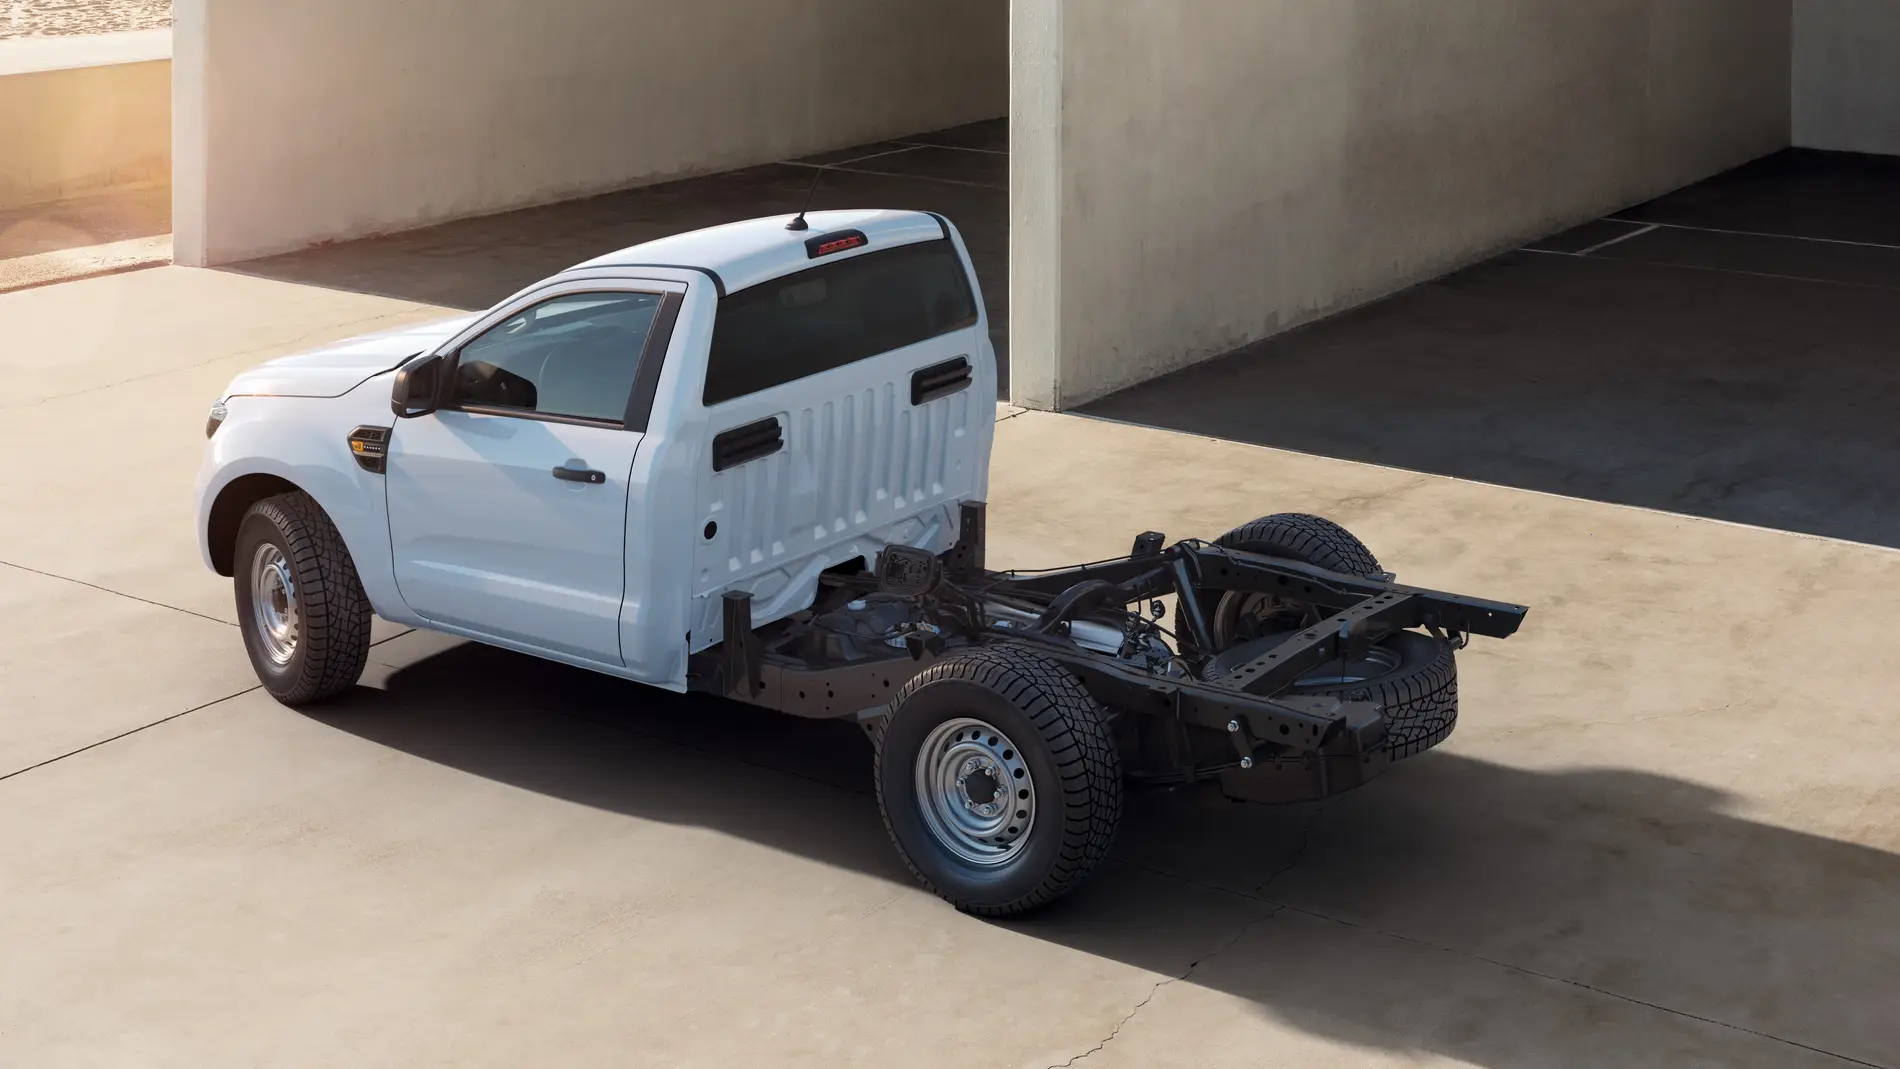 El Ranger Chasis-Cabina estará disponible en enero de 2021